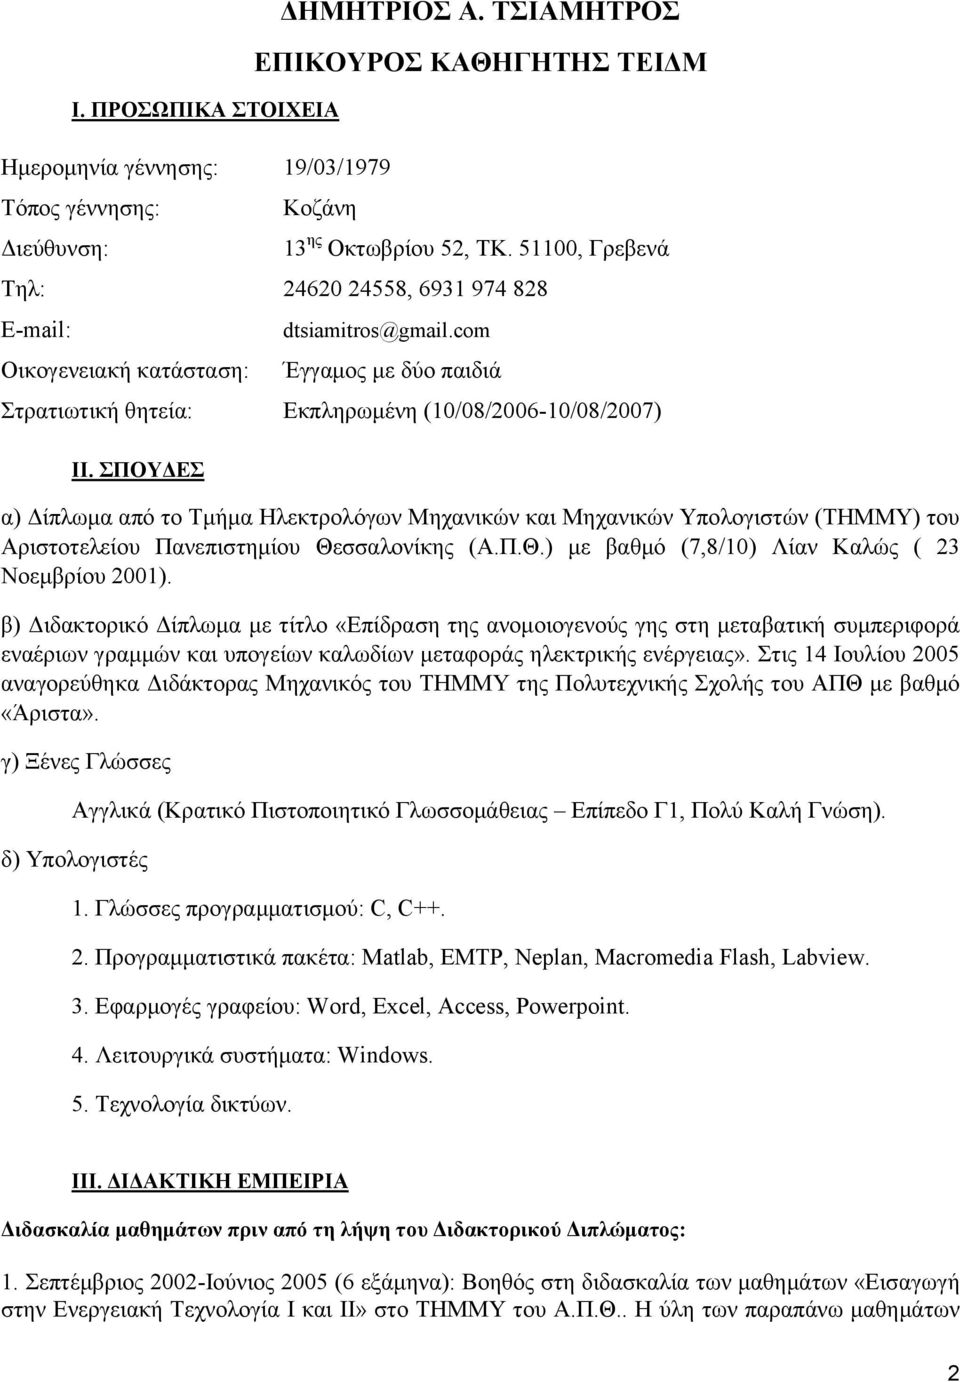 ΣΠΟΥΔΕΣ α) Δίπλωμα από το Τμήμα Ηλεκτρολόγων Μηχανικών και Μηχανικών Υπολογιστών (ΤΗΜΜΥ) του Αριστοτελείου Πανεπιστημίου Θεσσαλονίκης (Α.Π.Θ.) με βαθμό (7,8/10) Λίαν Καλώς ( 23 Νοεμβρίου 2001).